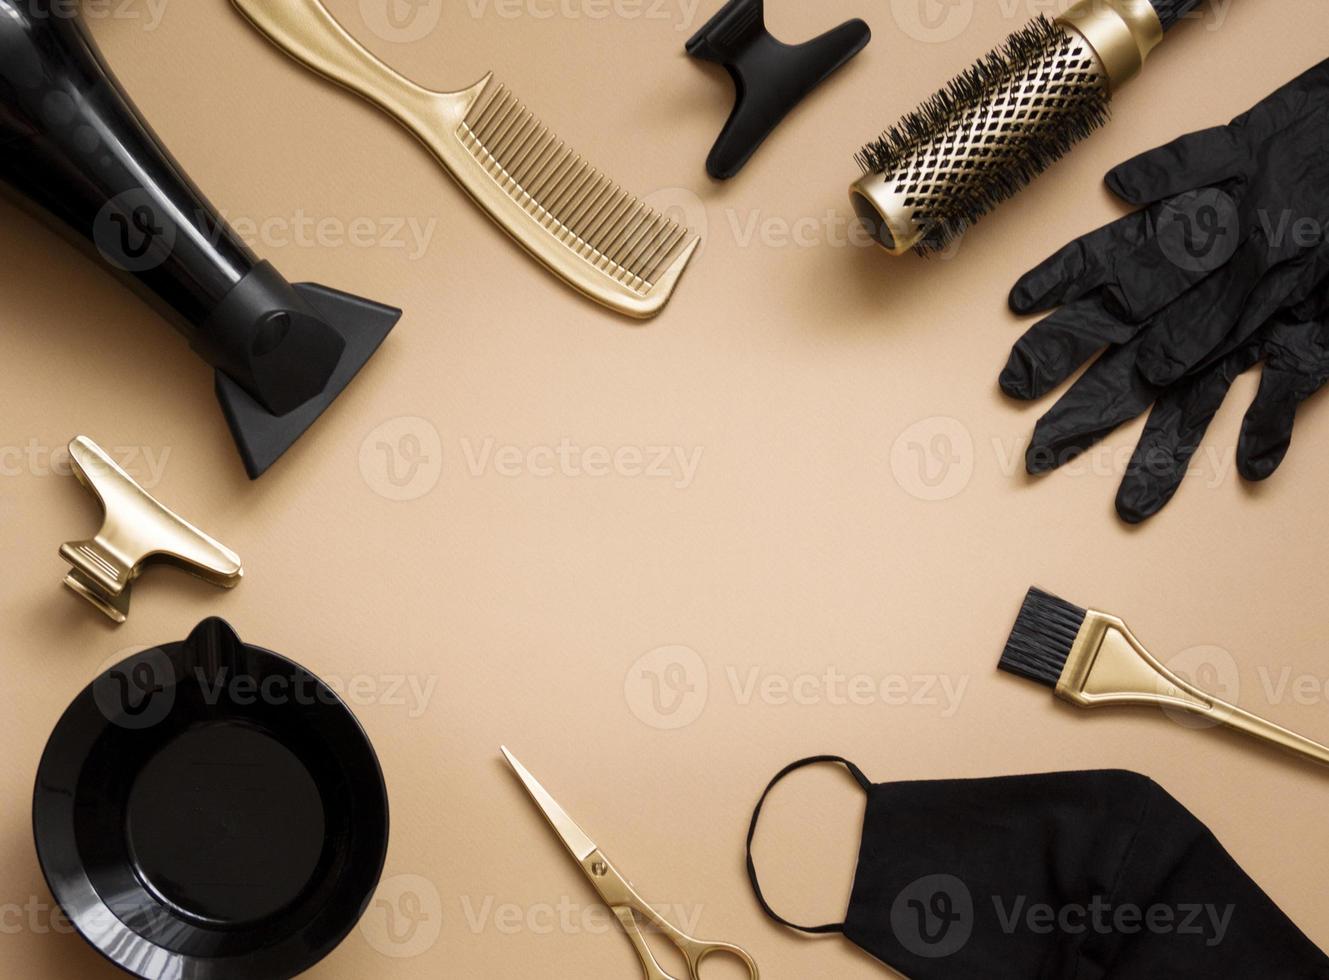 frisörverktyg på en beige bakgrund. ram av föremål frisörsalong, sax, handskar, mask, sax, kammar, hårtork. centrerat utrymme för text foto